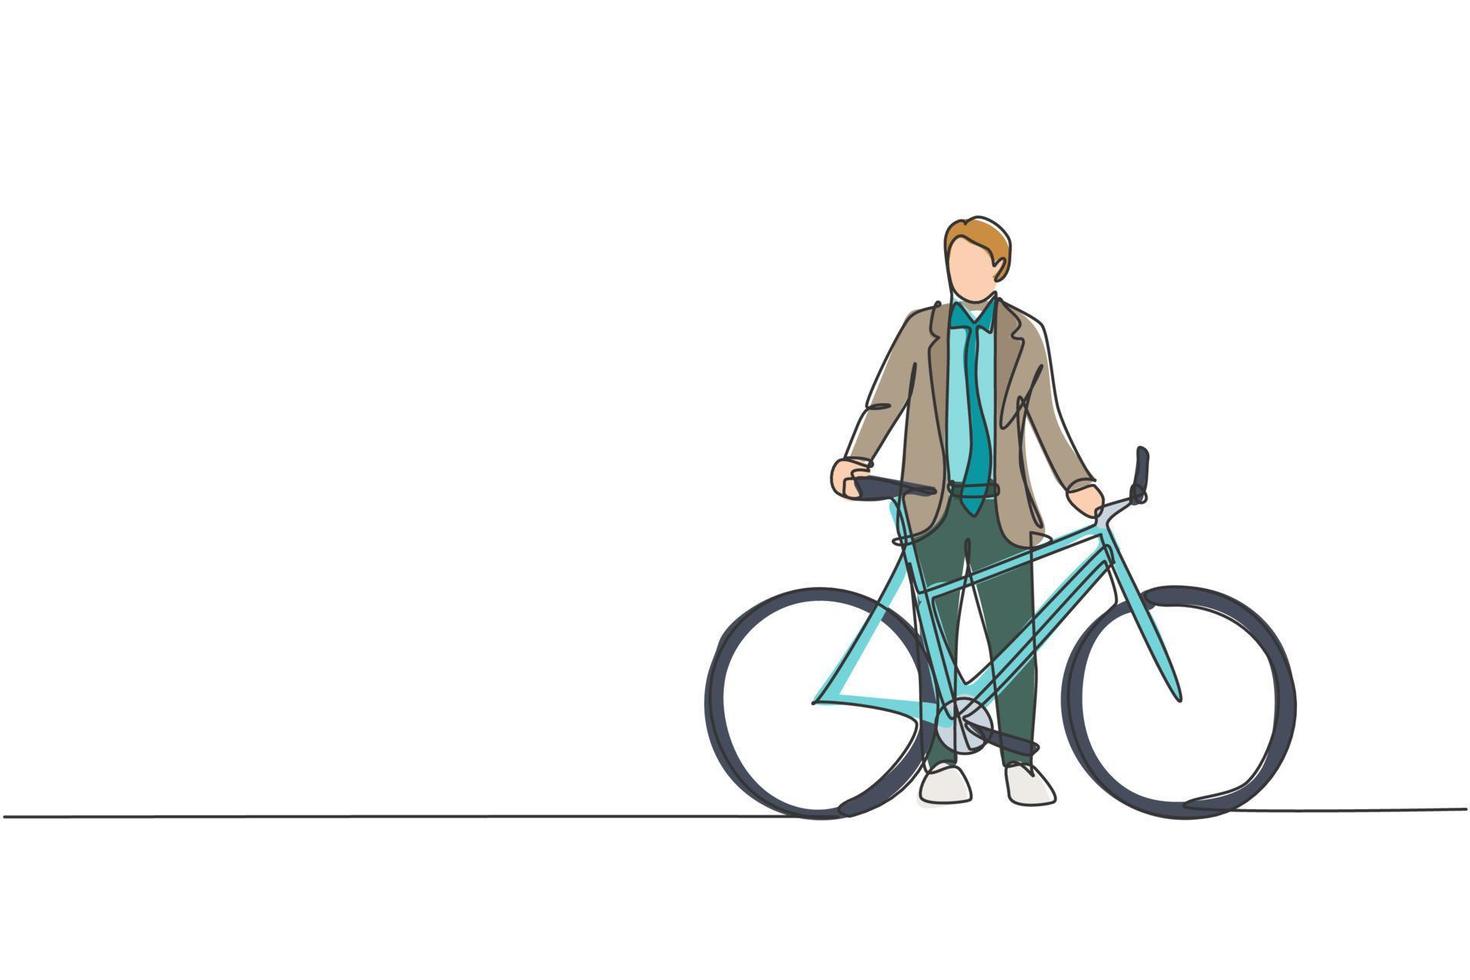 un disegno a linea singola di un giovane uomo dipendente di avvio professionale felice che va in bicicletta verso l'illustrazione vettoriale dello spazio di coworking. concetto di stile di vita da pendolare sano. moderno disegno a linea continua